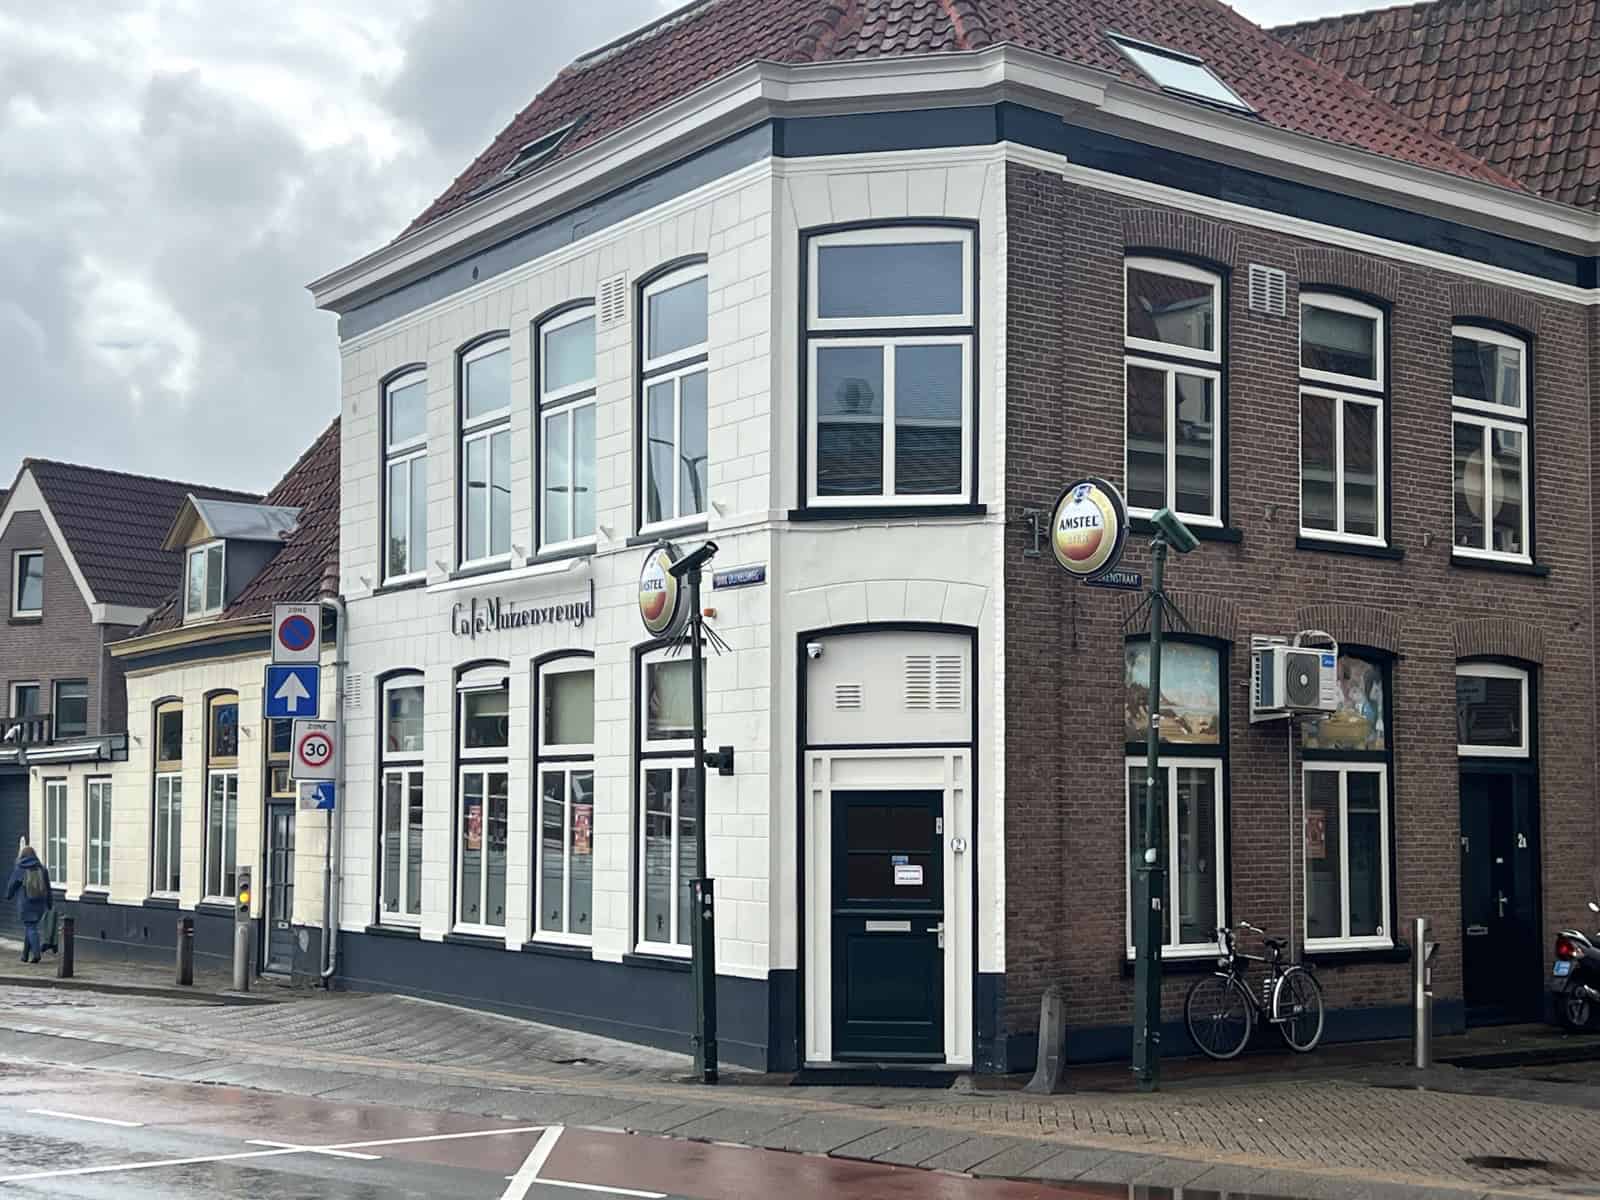 Café Muizenvreugd in Alkmaar